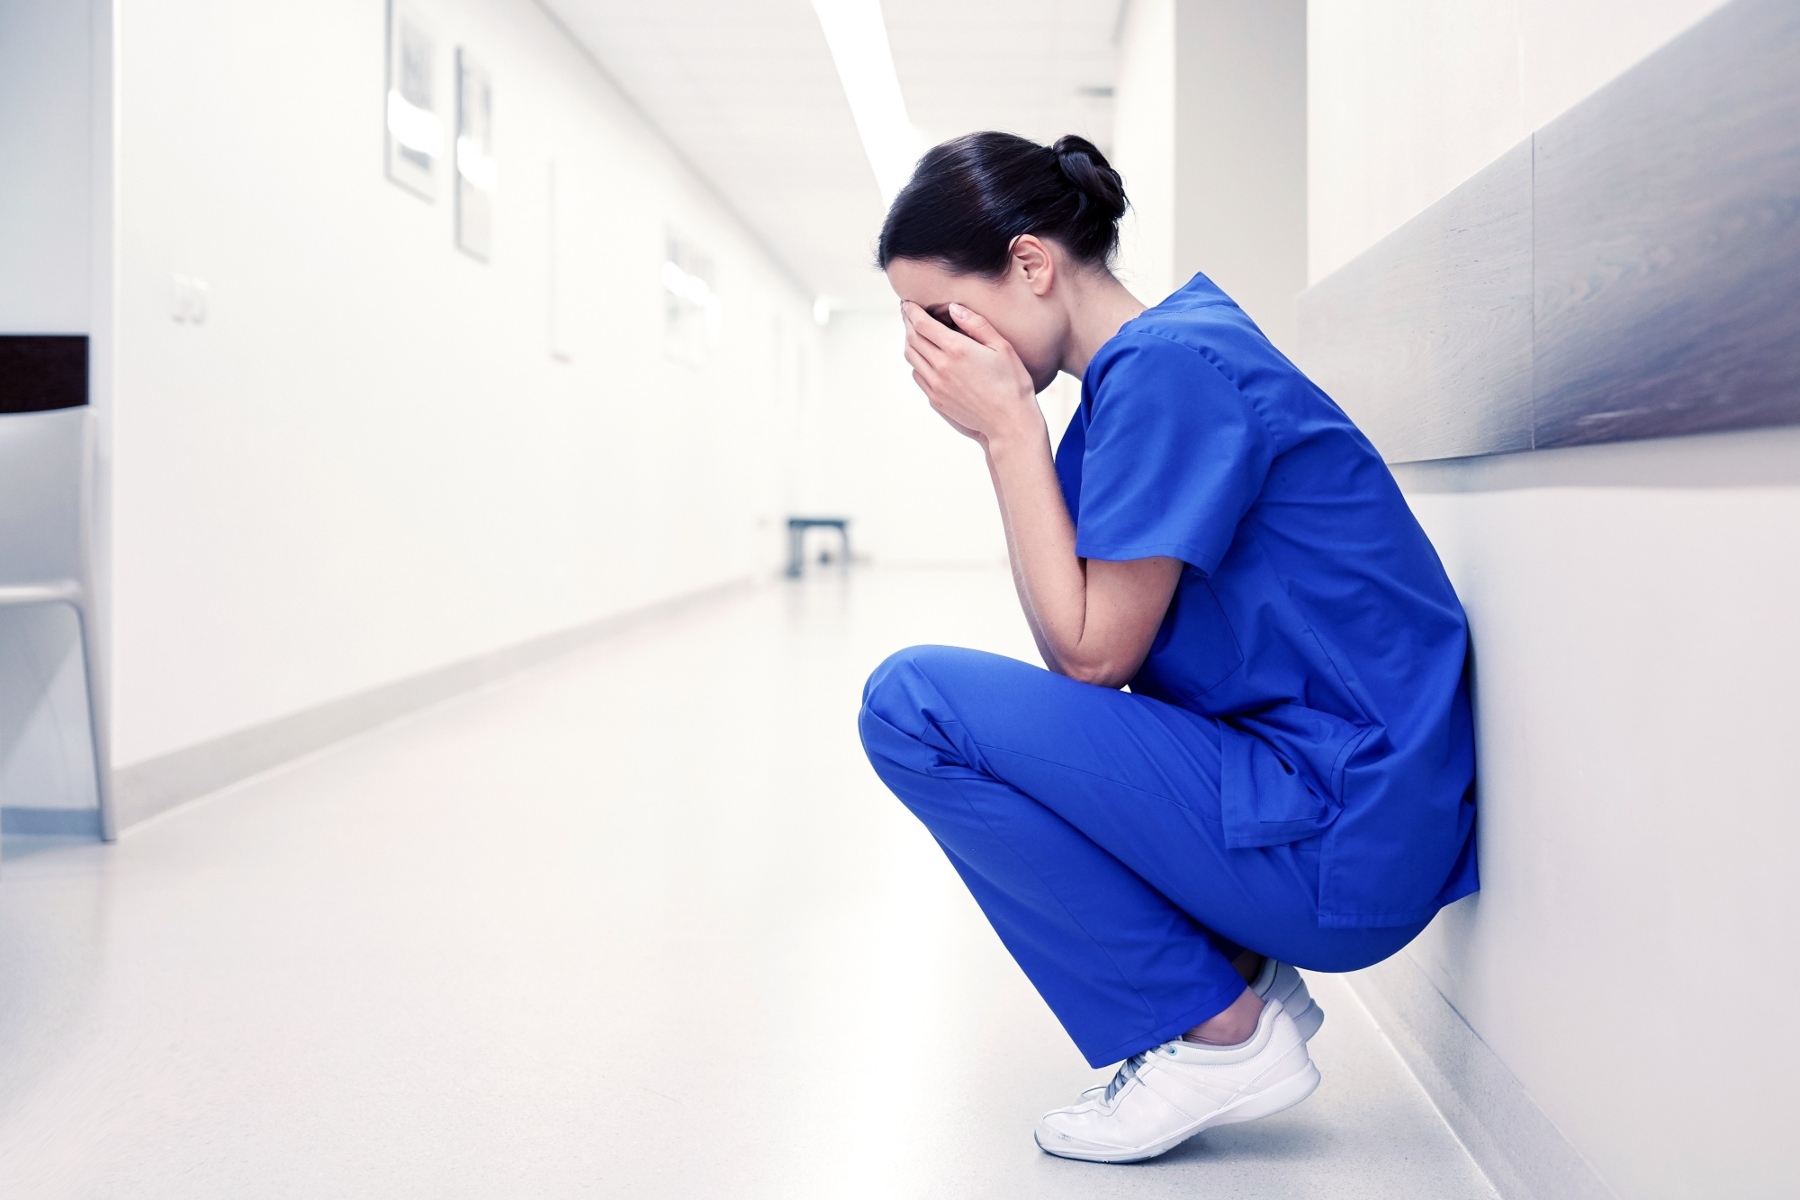 Η απουσία νοσοκομειακών κανόνων AI ανησυχεί τους νοσηλευτές